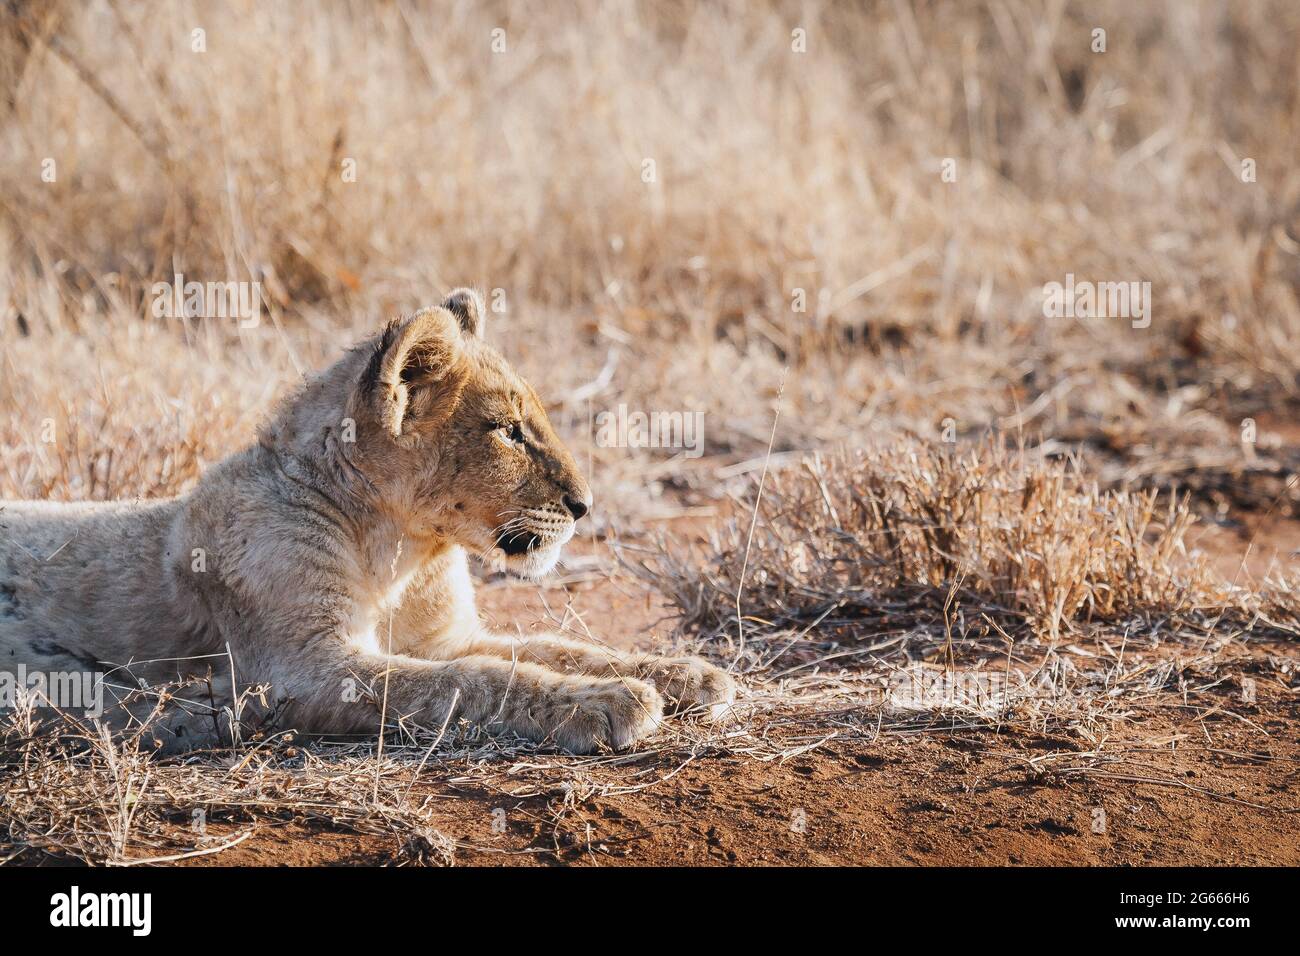 Animaux sauvages - lion cub dans le parc national Kruger, Afrique du Sud Banque D'Images